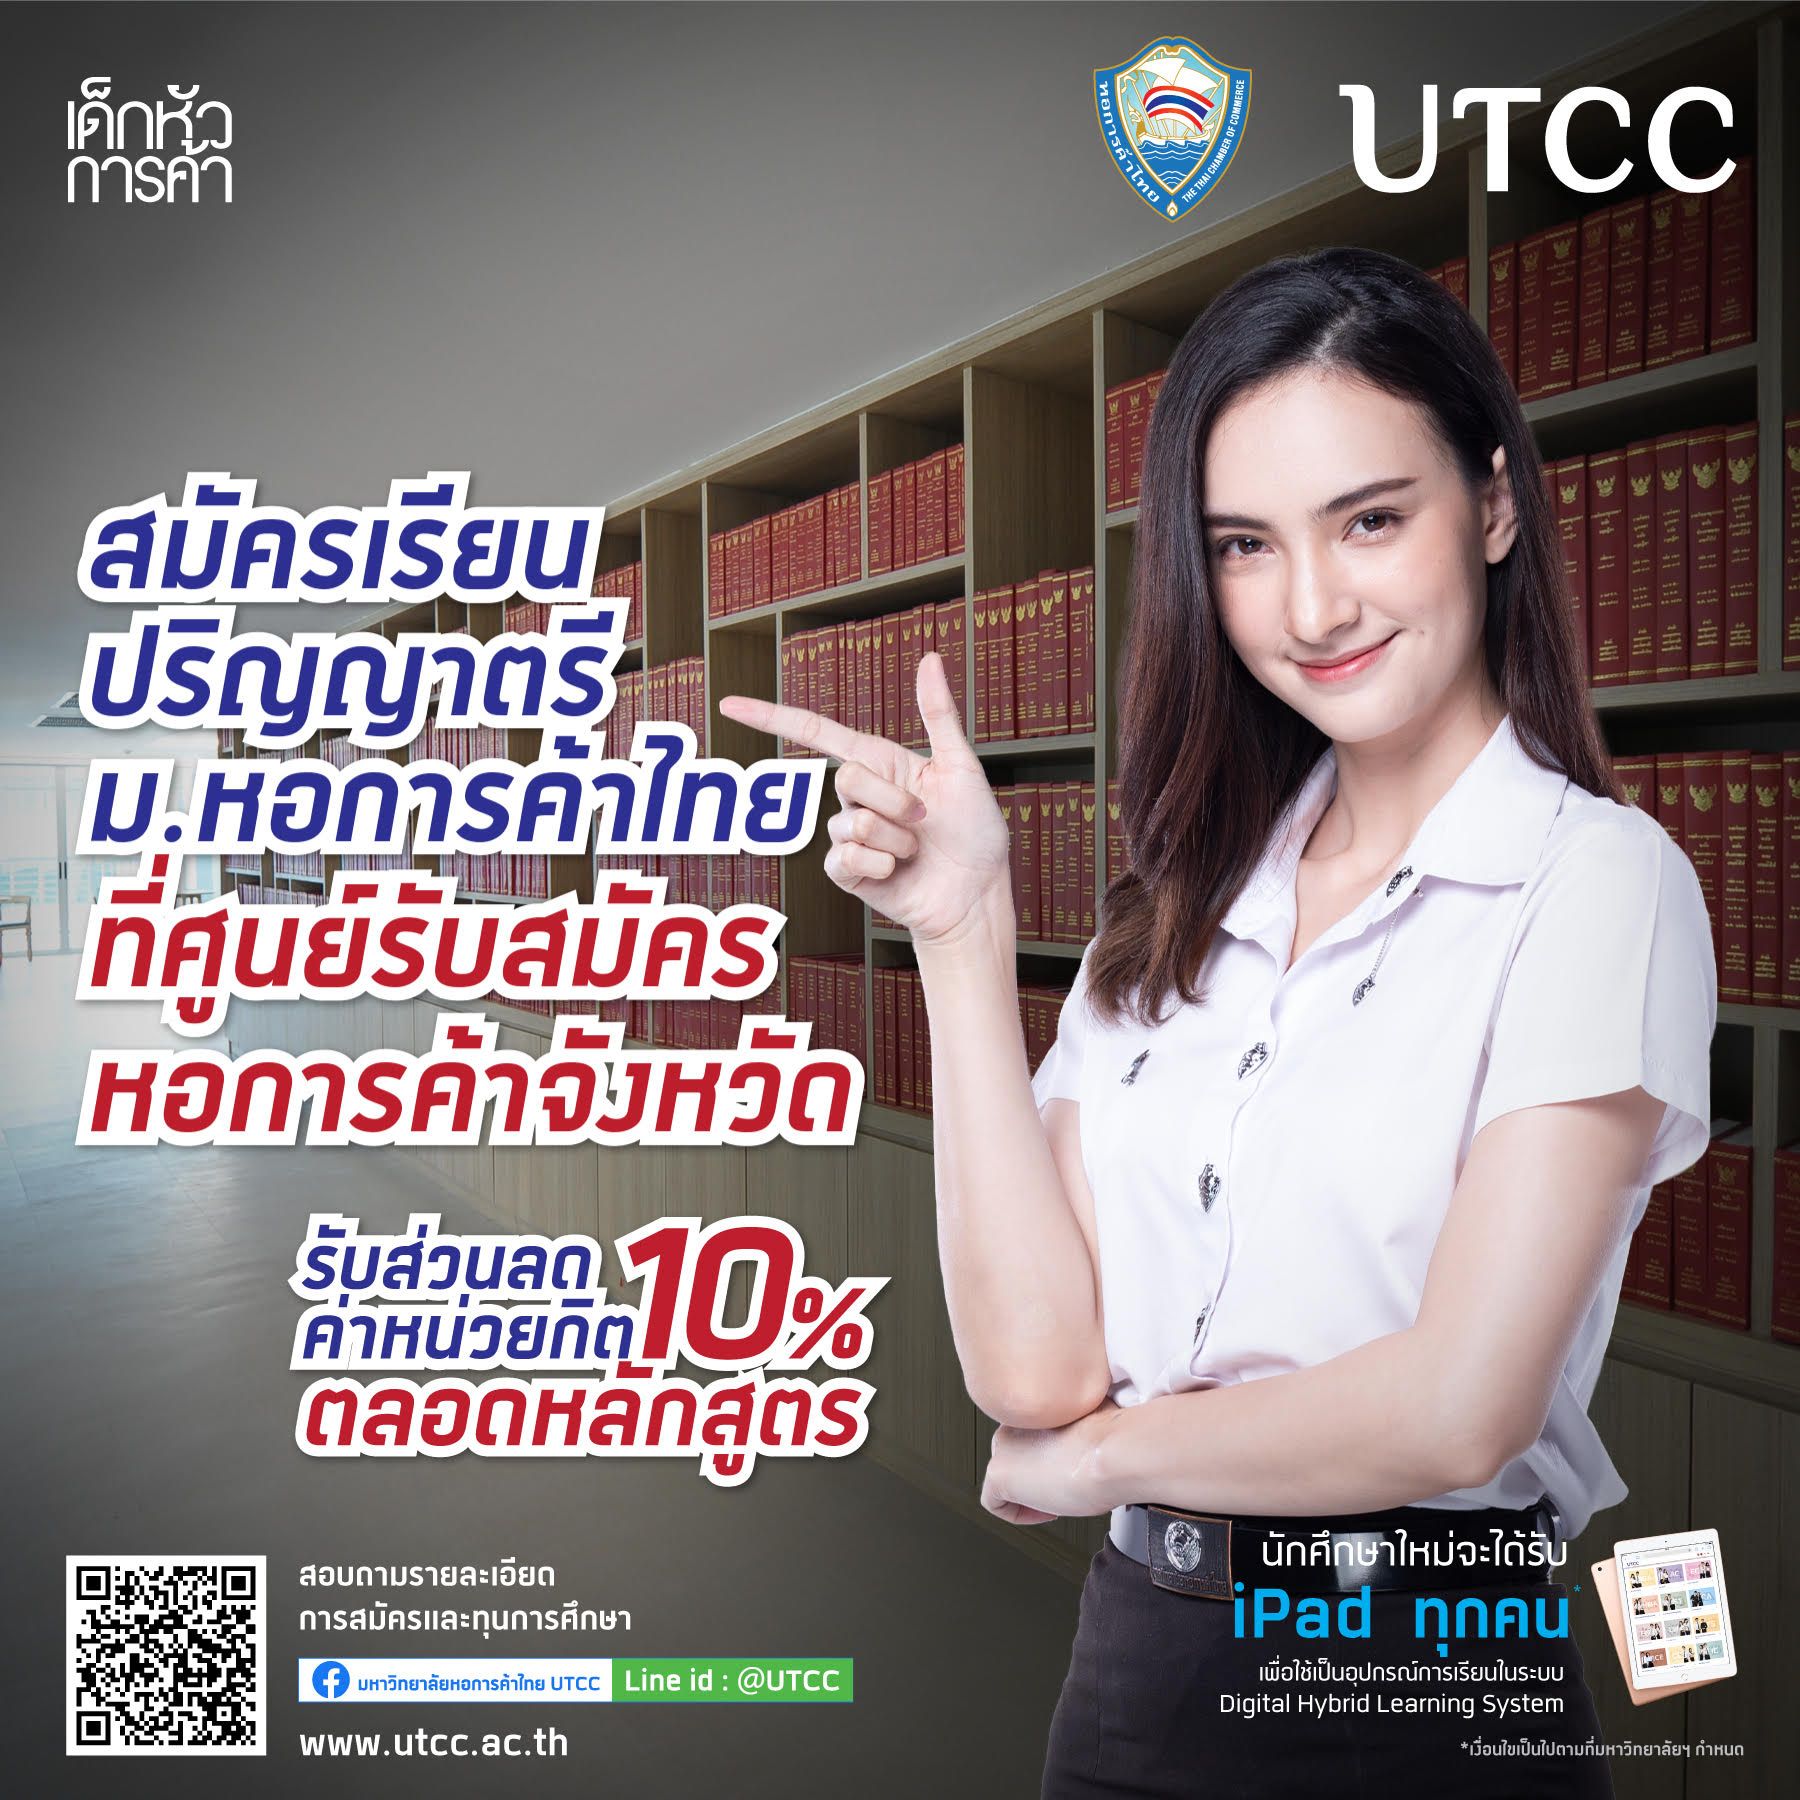 สมัครเข้าศึกษาต่อในมหาวิทยาลัยหอการค้าไทย ได้ที่ศูนย์รับสมัครนักศึกษาใหม่หอการค้าจังหวัดนครราชสีมา รับสิทธิพิเศษ ให้ส่วนลดค่าหน่วยกิต 10% ตลอดหลักสูตร ทุกคณะสาขาวิชา